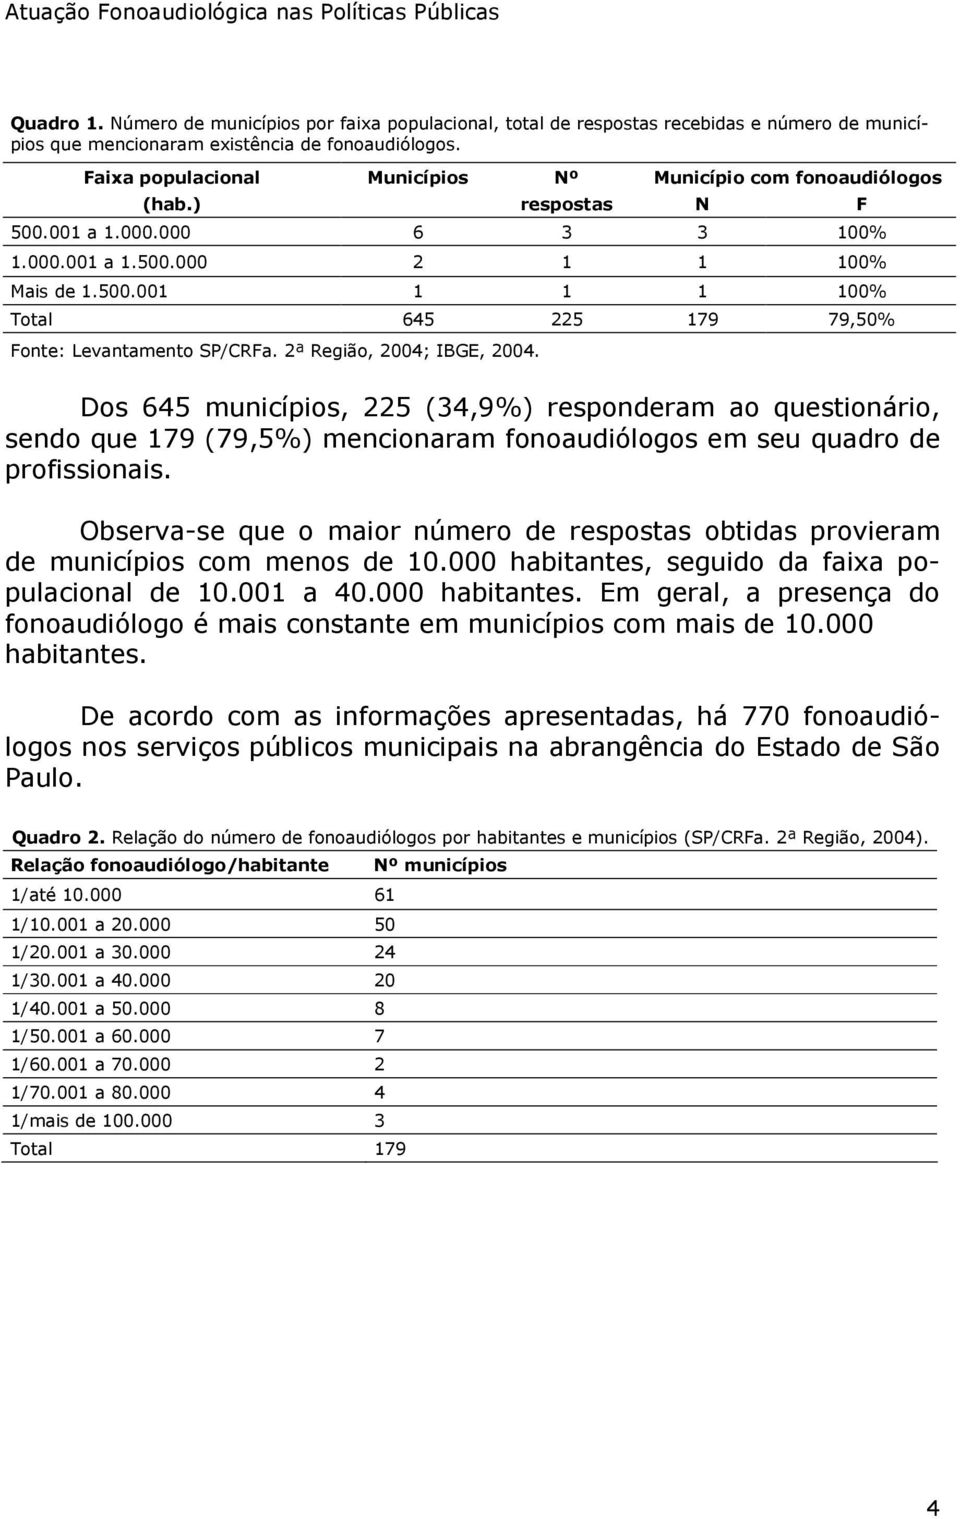 2ª Região, 2004; IBGE, 2004. Dos 645 municípios, 225 (34,9%) responderam ao questionário, sendo que 179 (79,5%) mencionaram fonoaudiólogos em seu quadro de profissionais.